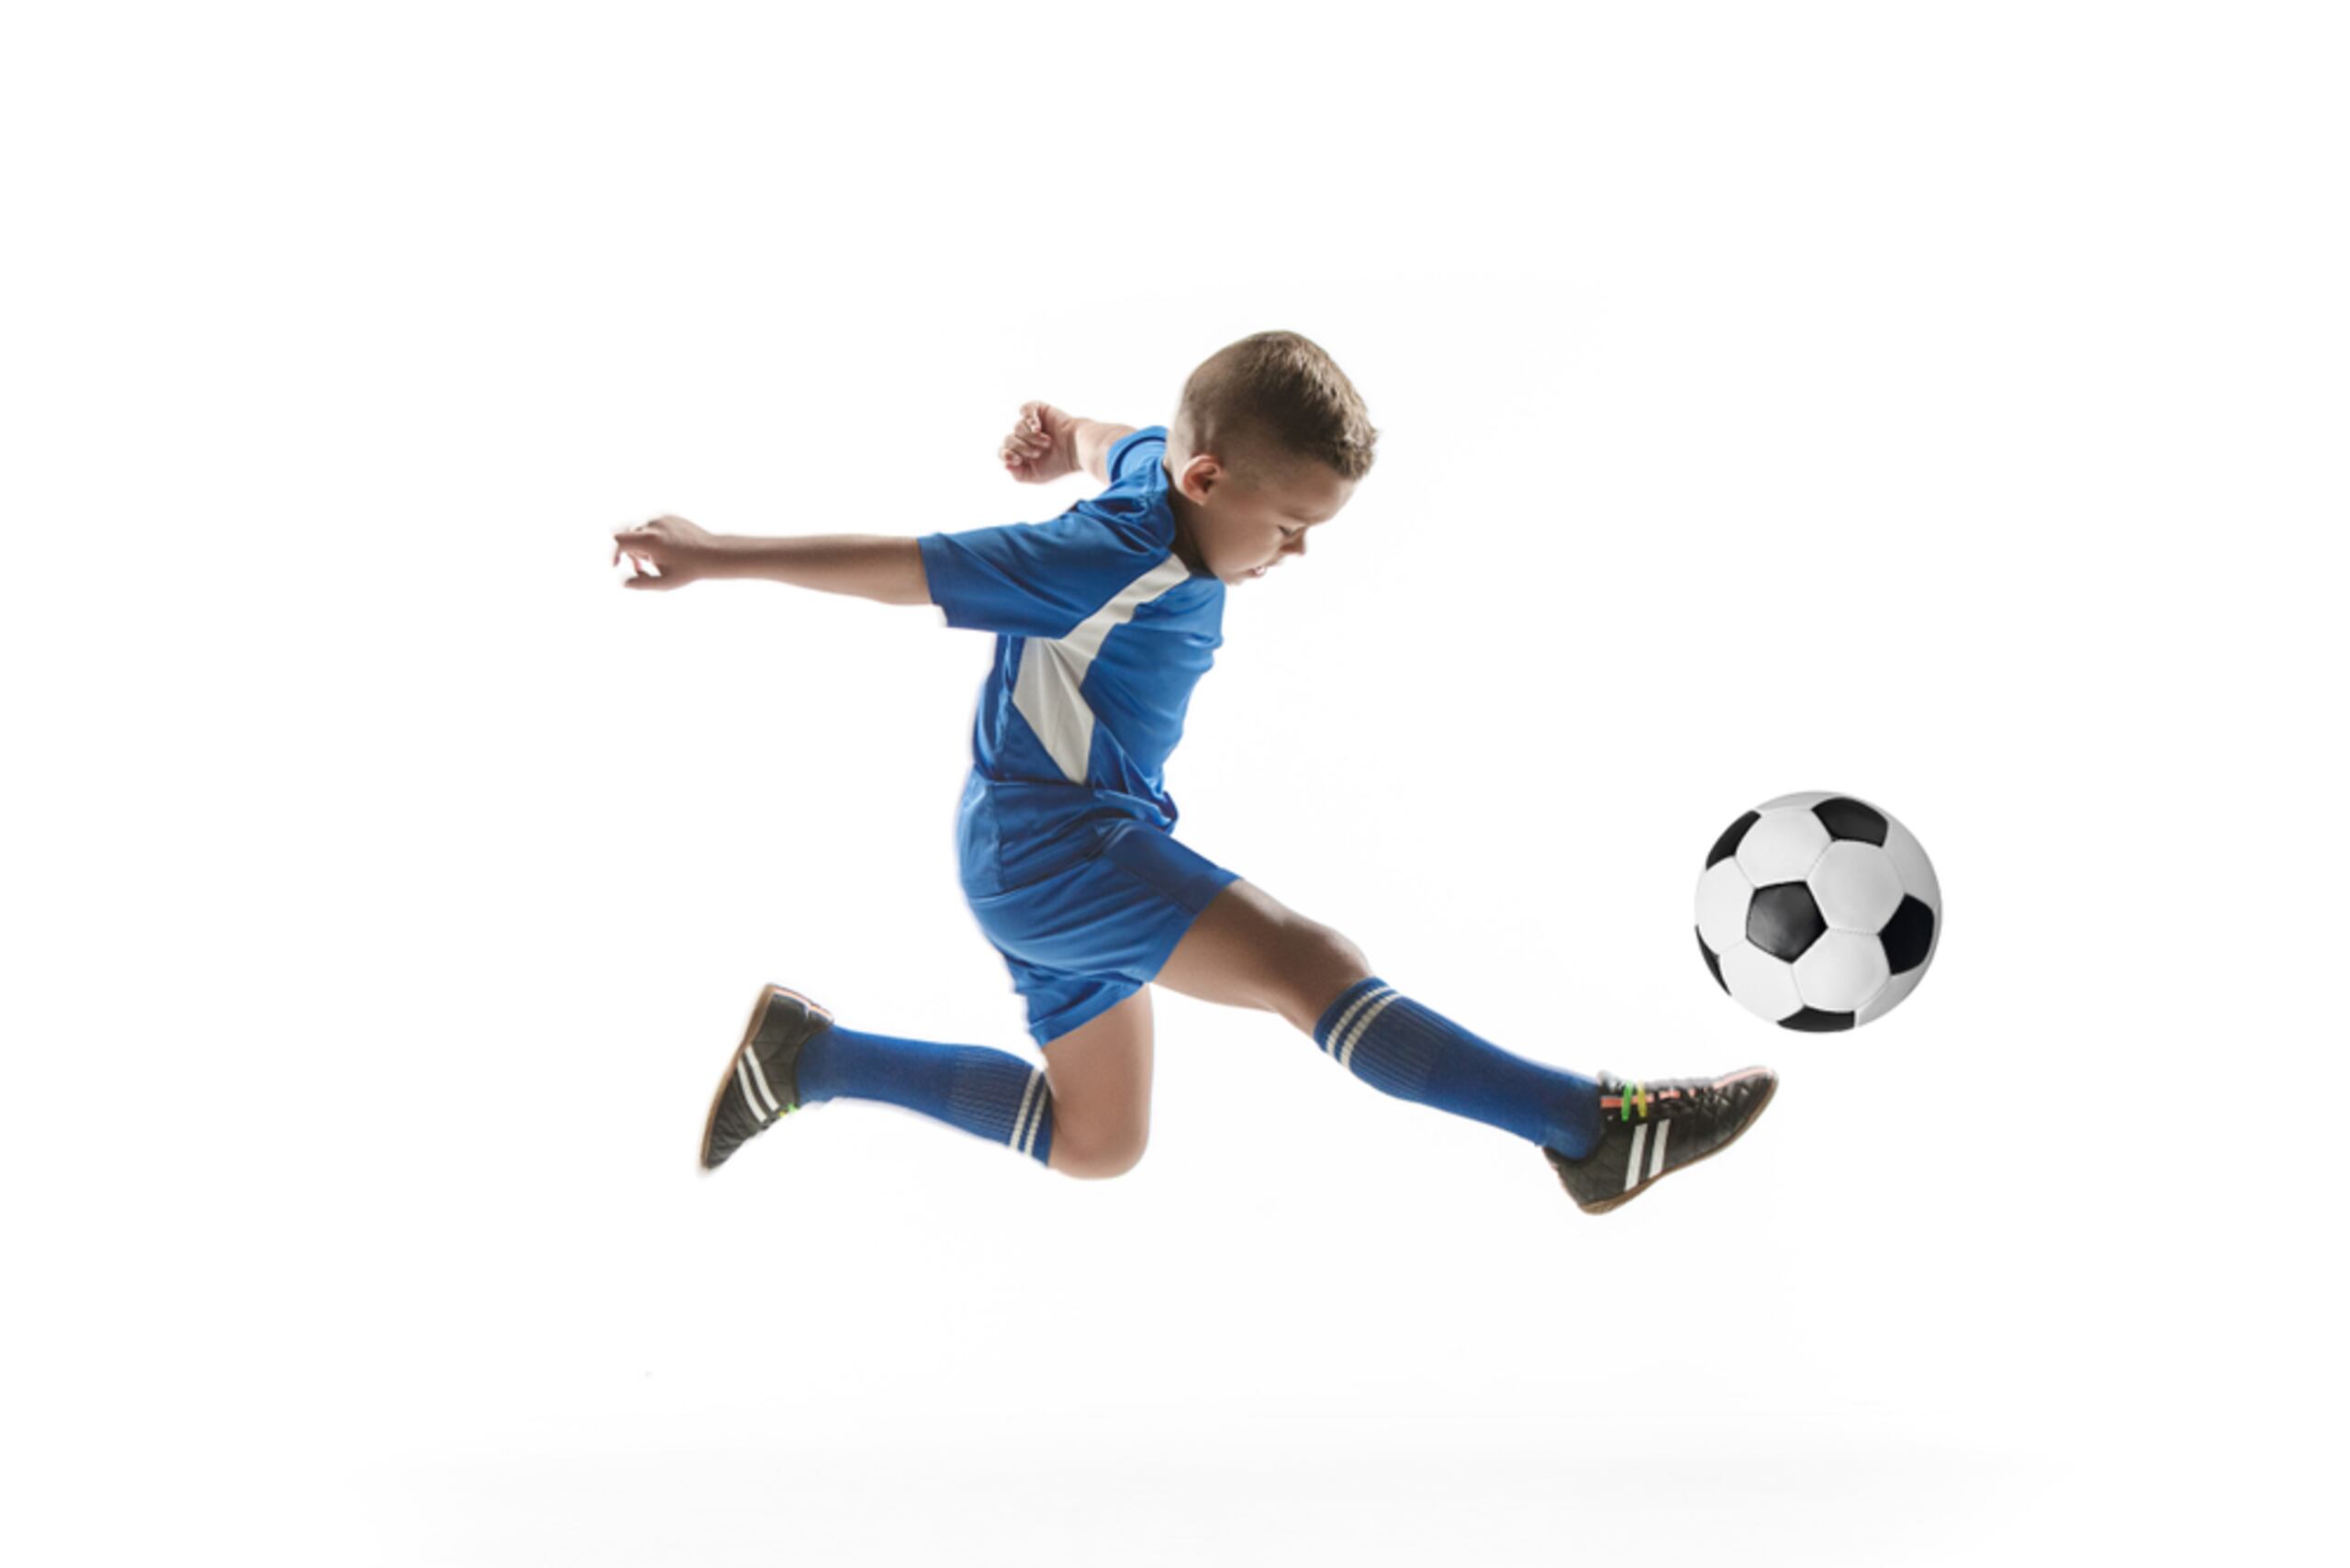 El deporte es importante para el desarrollo de los más chicos, pero también debe ser una actividad que los haga sentir a gusto y tomar los descansos necesarios para evitar lesiones.